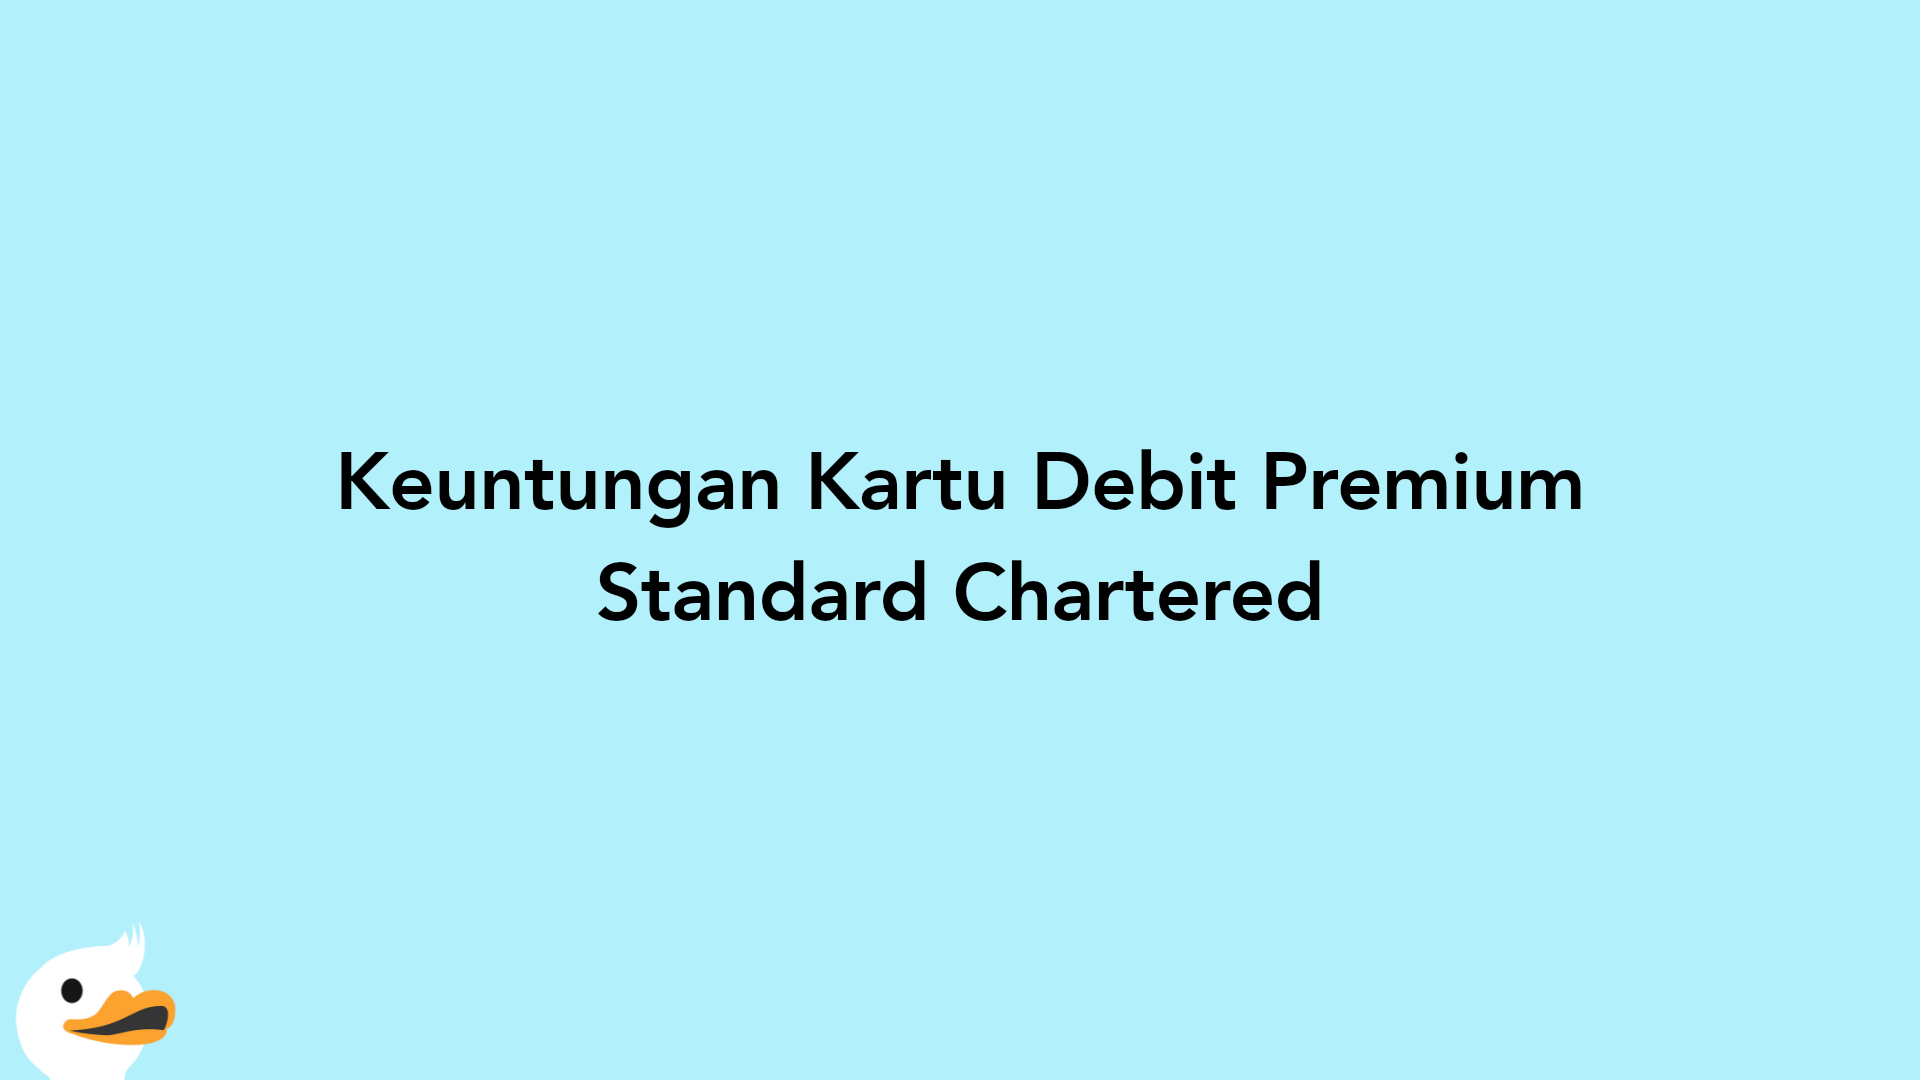 Keuntungan Kartu Debit Premium Standard Chartered